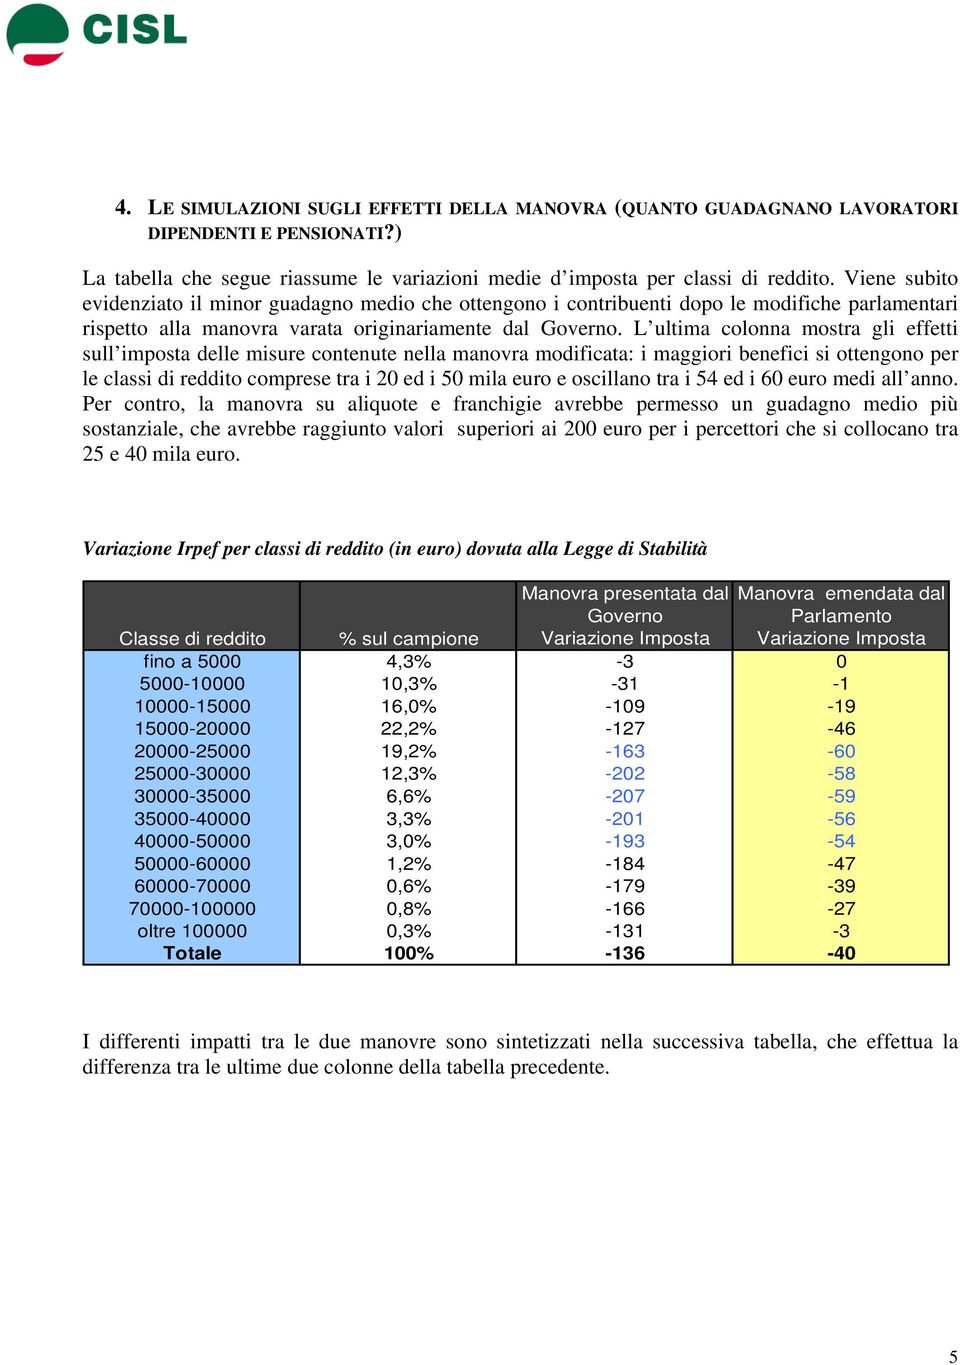 L ultima colonna mostra gli effetti sull imposta delle misure contenute nella manovra modificata: i maggiori benefici si ottengono per le classi di reddito comprese tra i 20 ed i 50 mila euro e